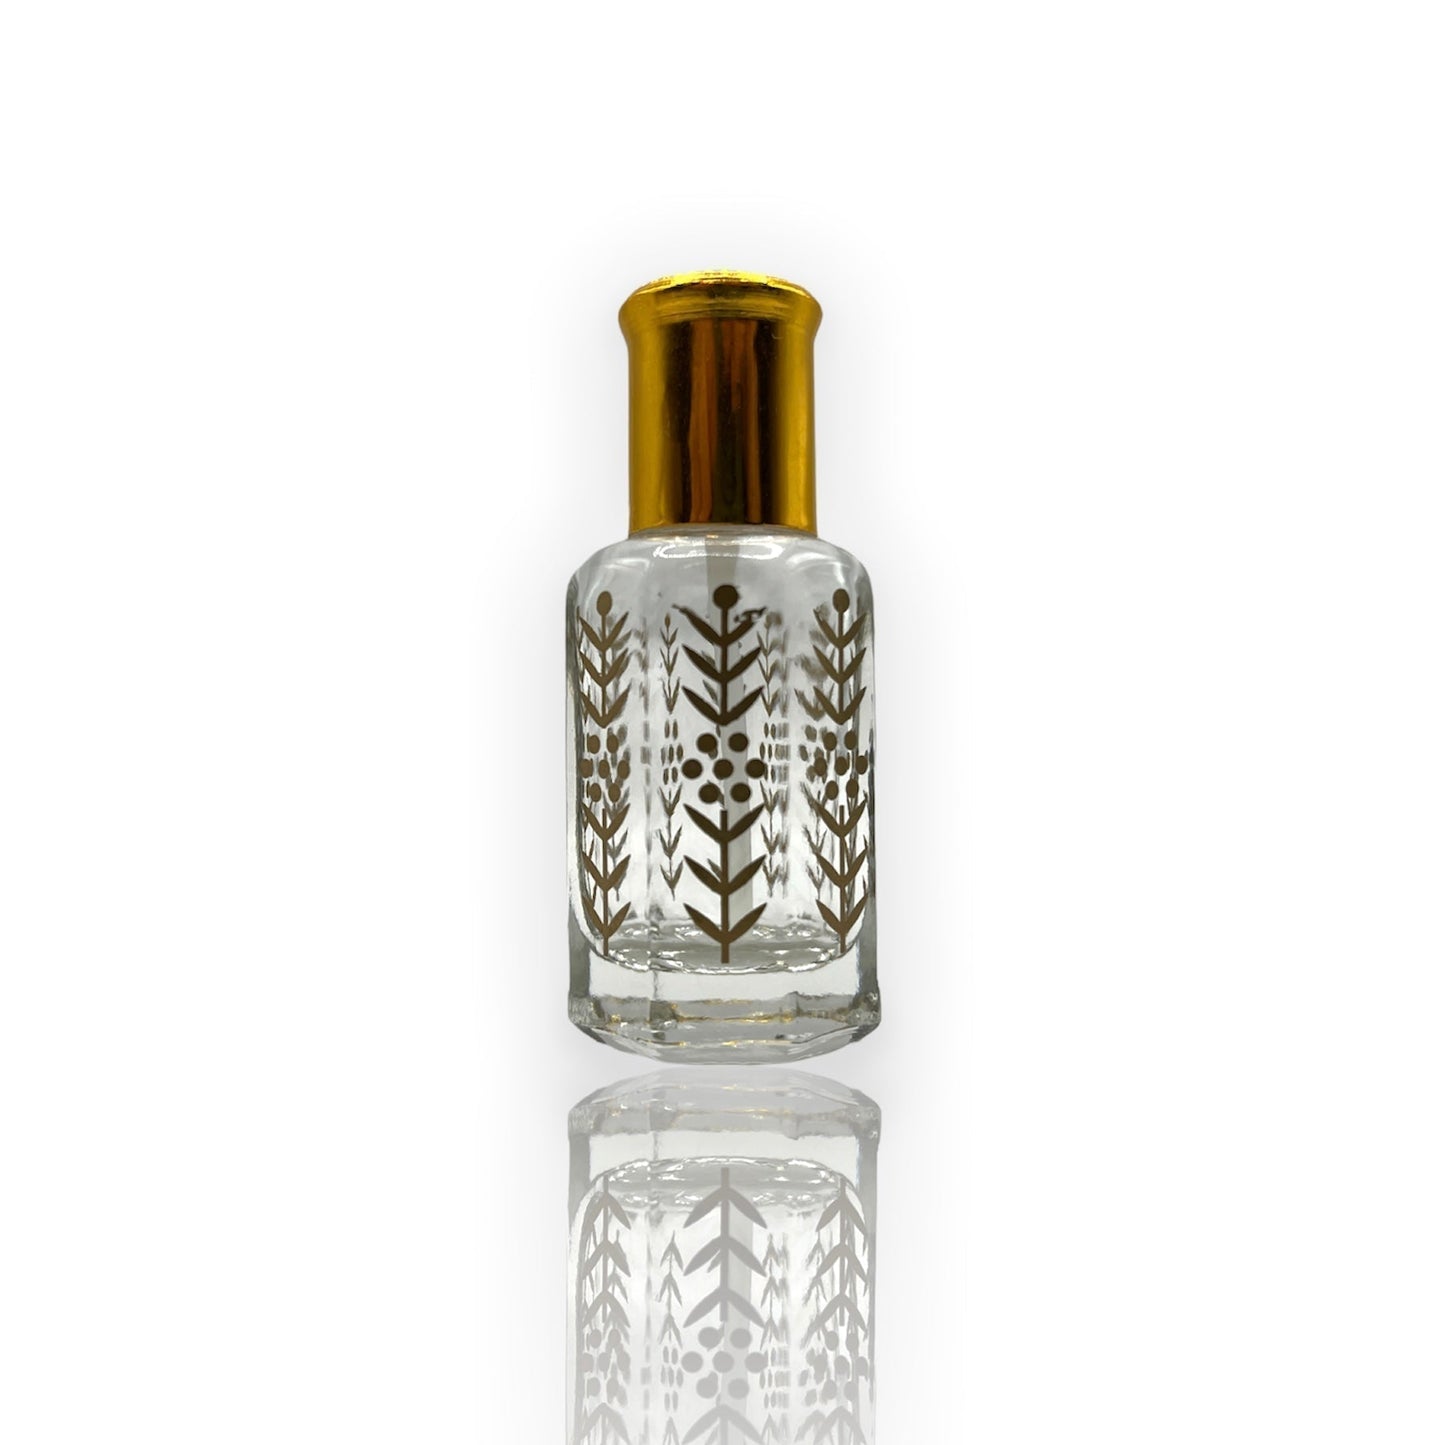 F-08 Öl Parfüm *Inspiriert Miss Dior Chierie